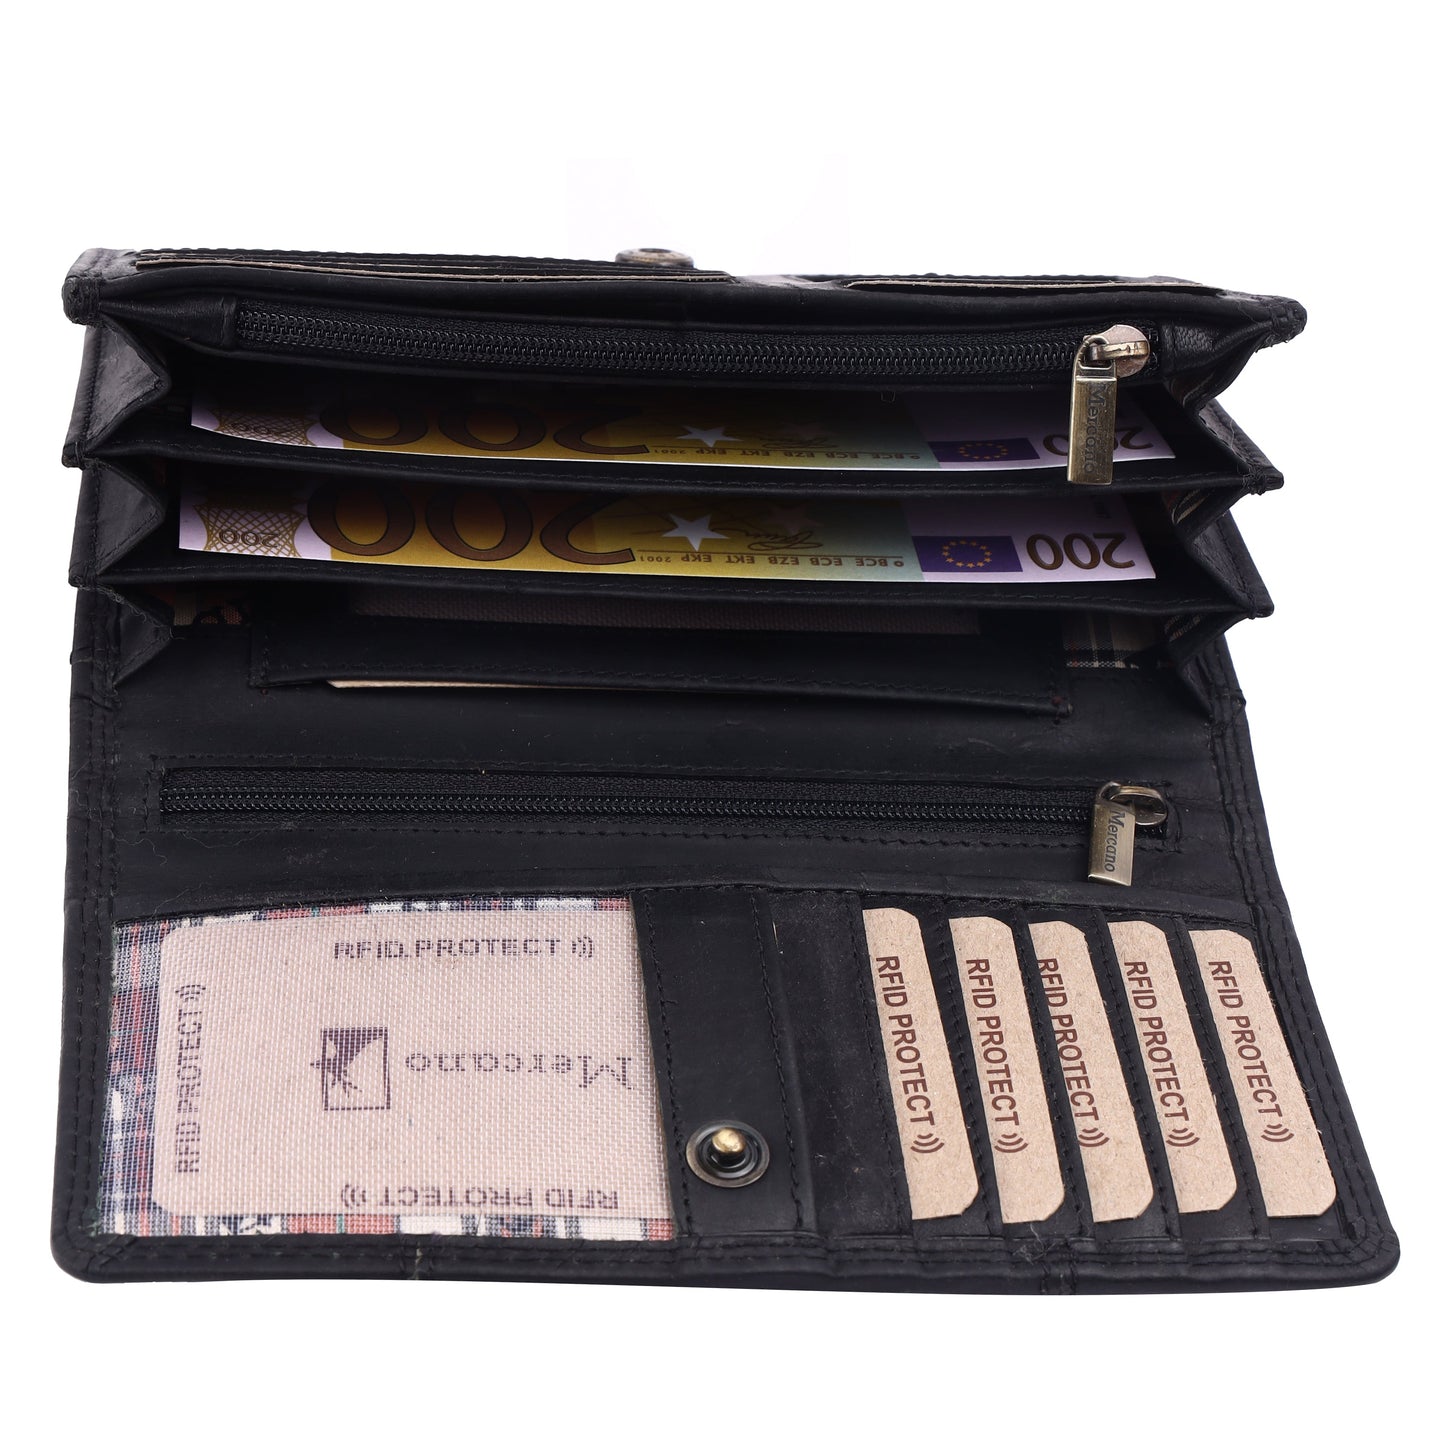 MERCANO® Damen Geldbörse aus Leder mit RFID-Schutz | 11 Kartenfächern | 3 Scheinfächern | Münzfach | #JL01